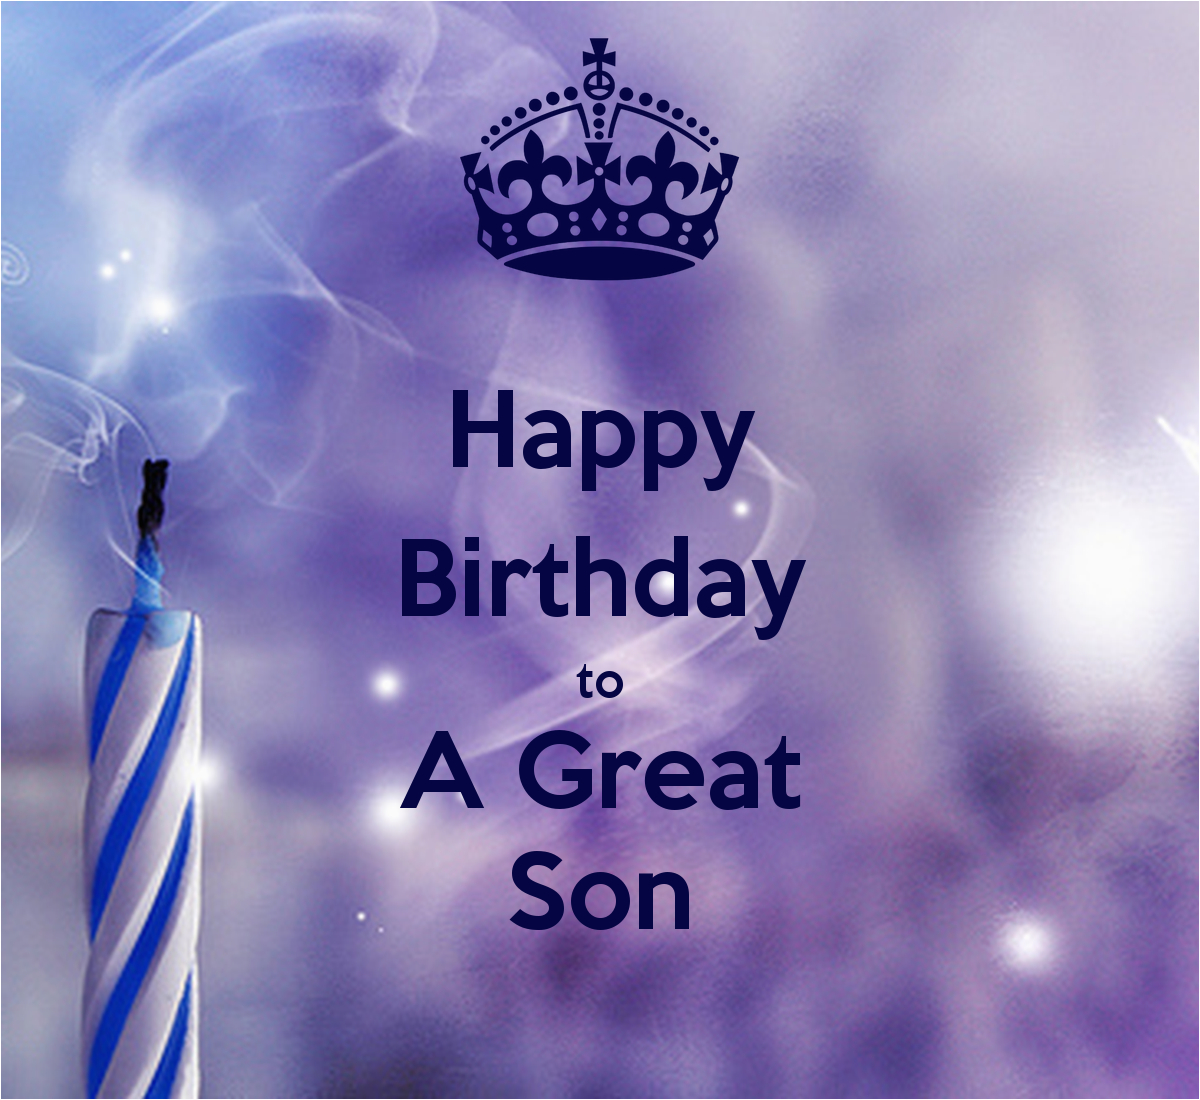 Happy Birthday son Pics and Quotes | BirthdayBuzz